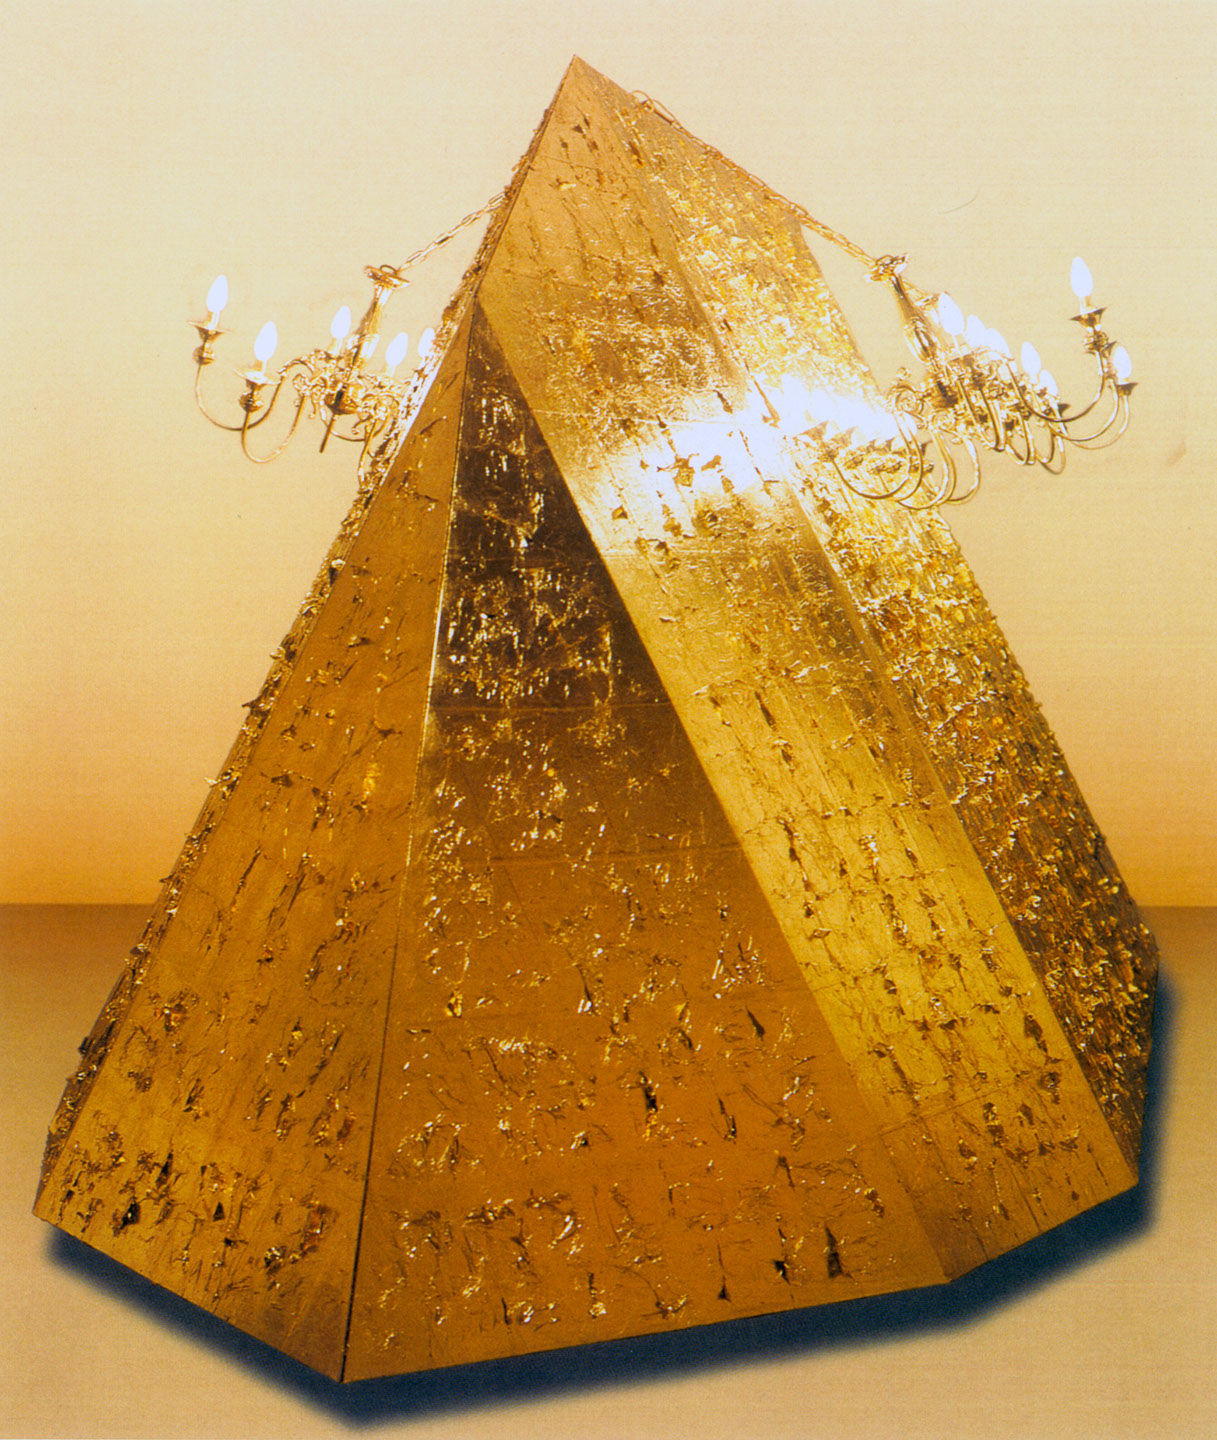 Τιτλος: Το Βουνό 1
Υλικά: Ξύλινη κατασκευή, Φύλλο χρυσού, Πολυέλαιοι
Μέγεθος: 240x600x240 cm
Έτος: 1998